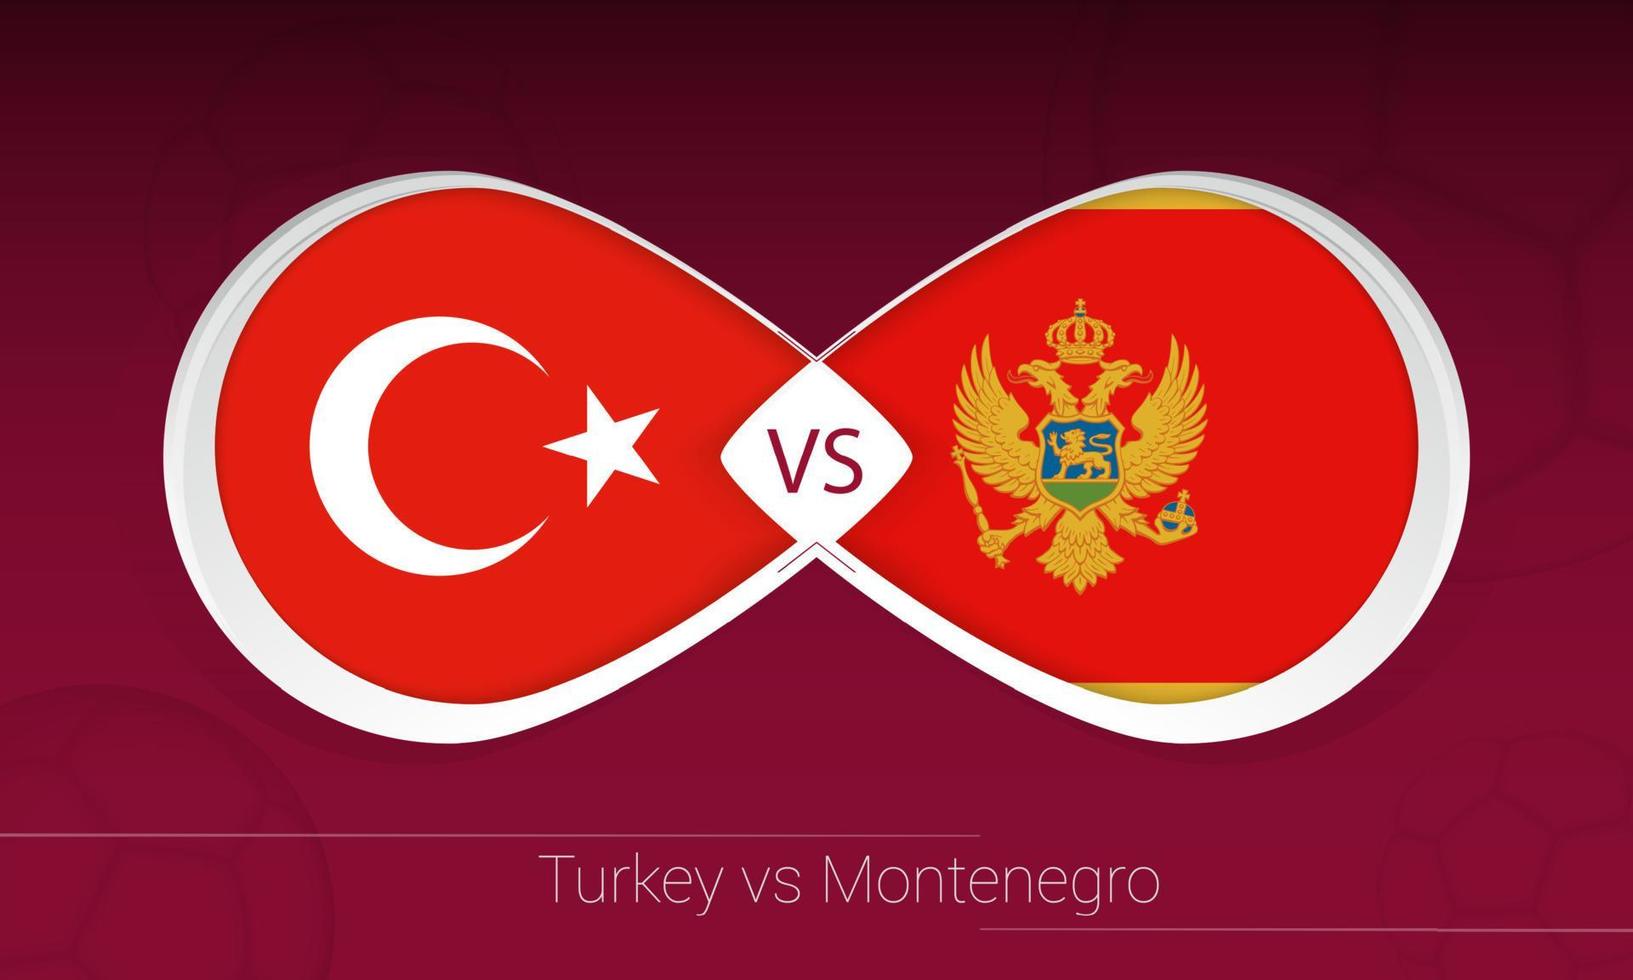 Turkiet vs Montenegro i fotbollstävling, grupp g. kontra ikonen på fotboll bakgrund. vektor